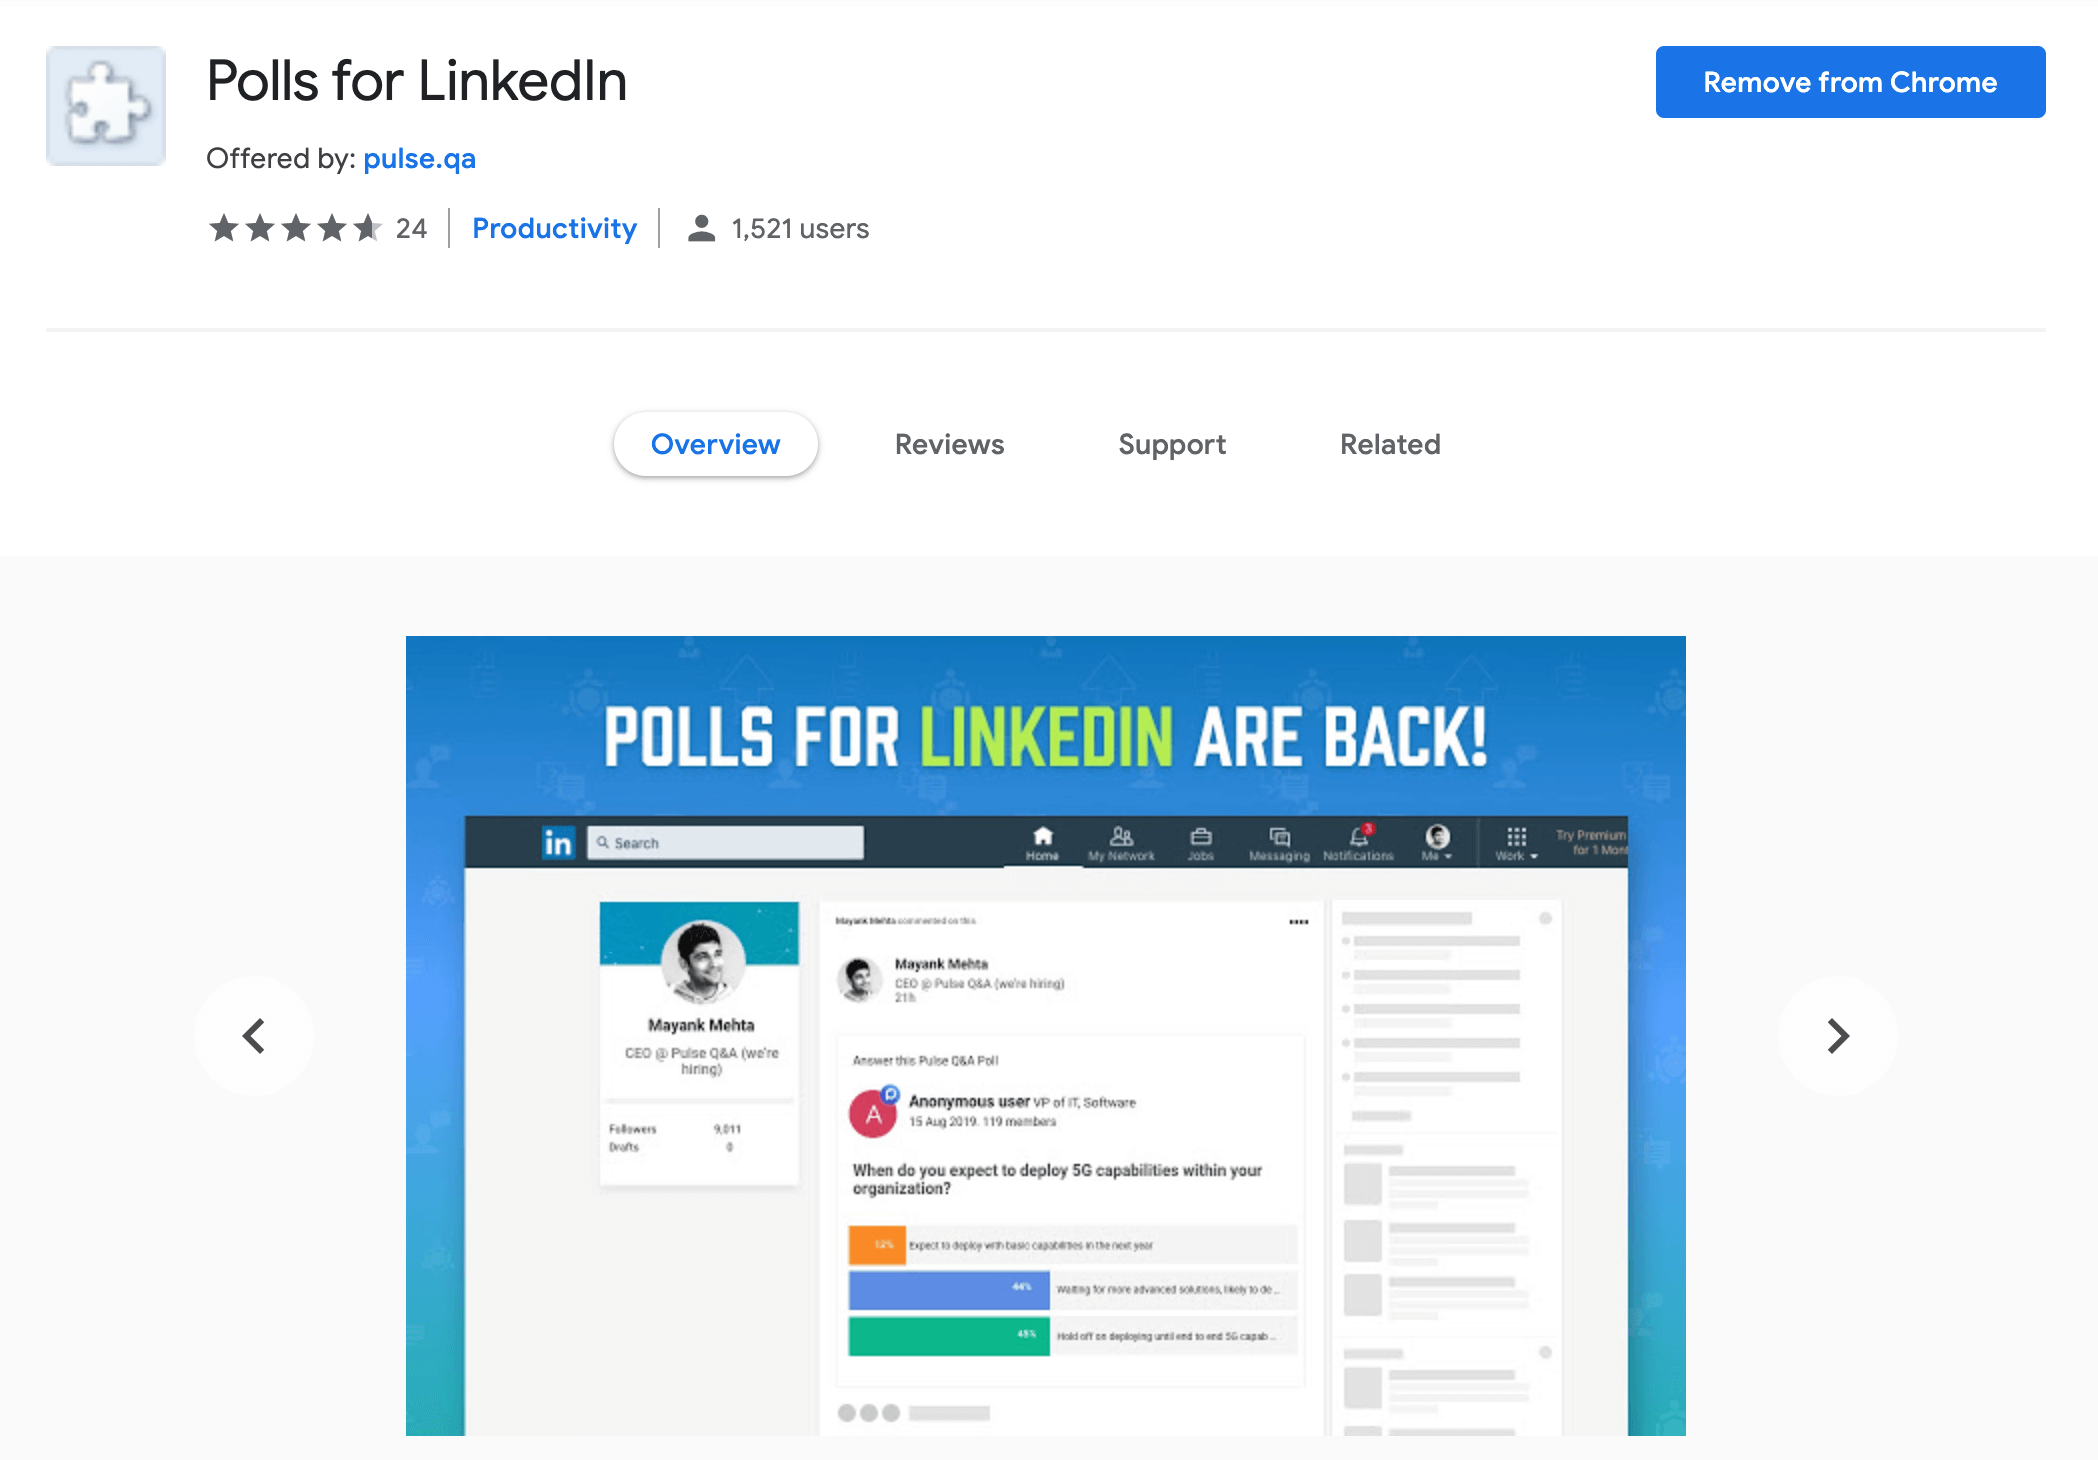 Polls for LinkedIn - Chrome Extension